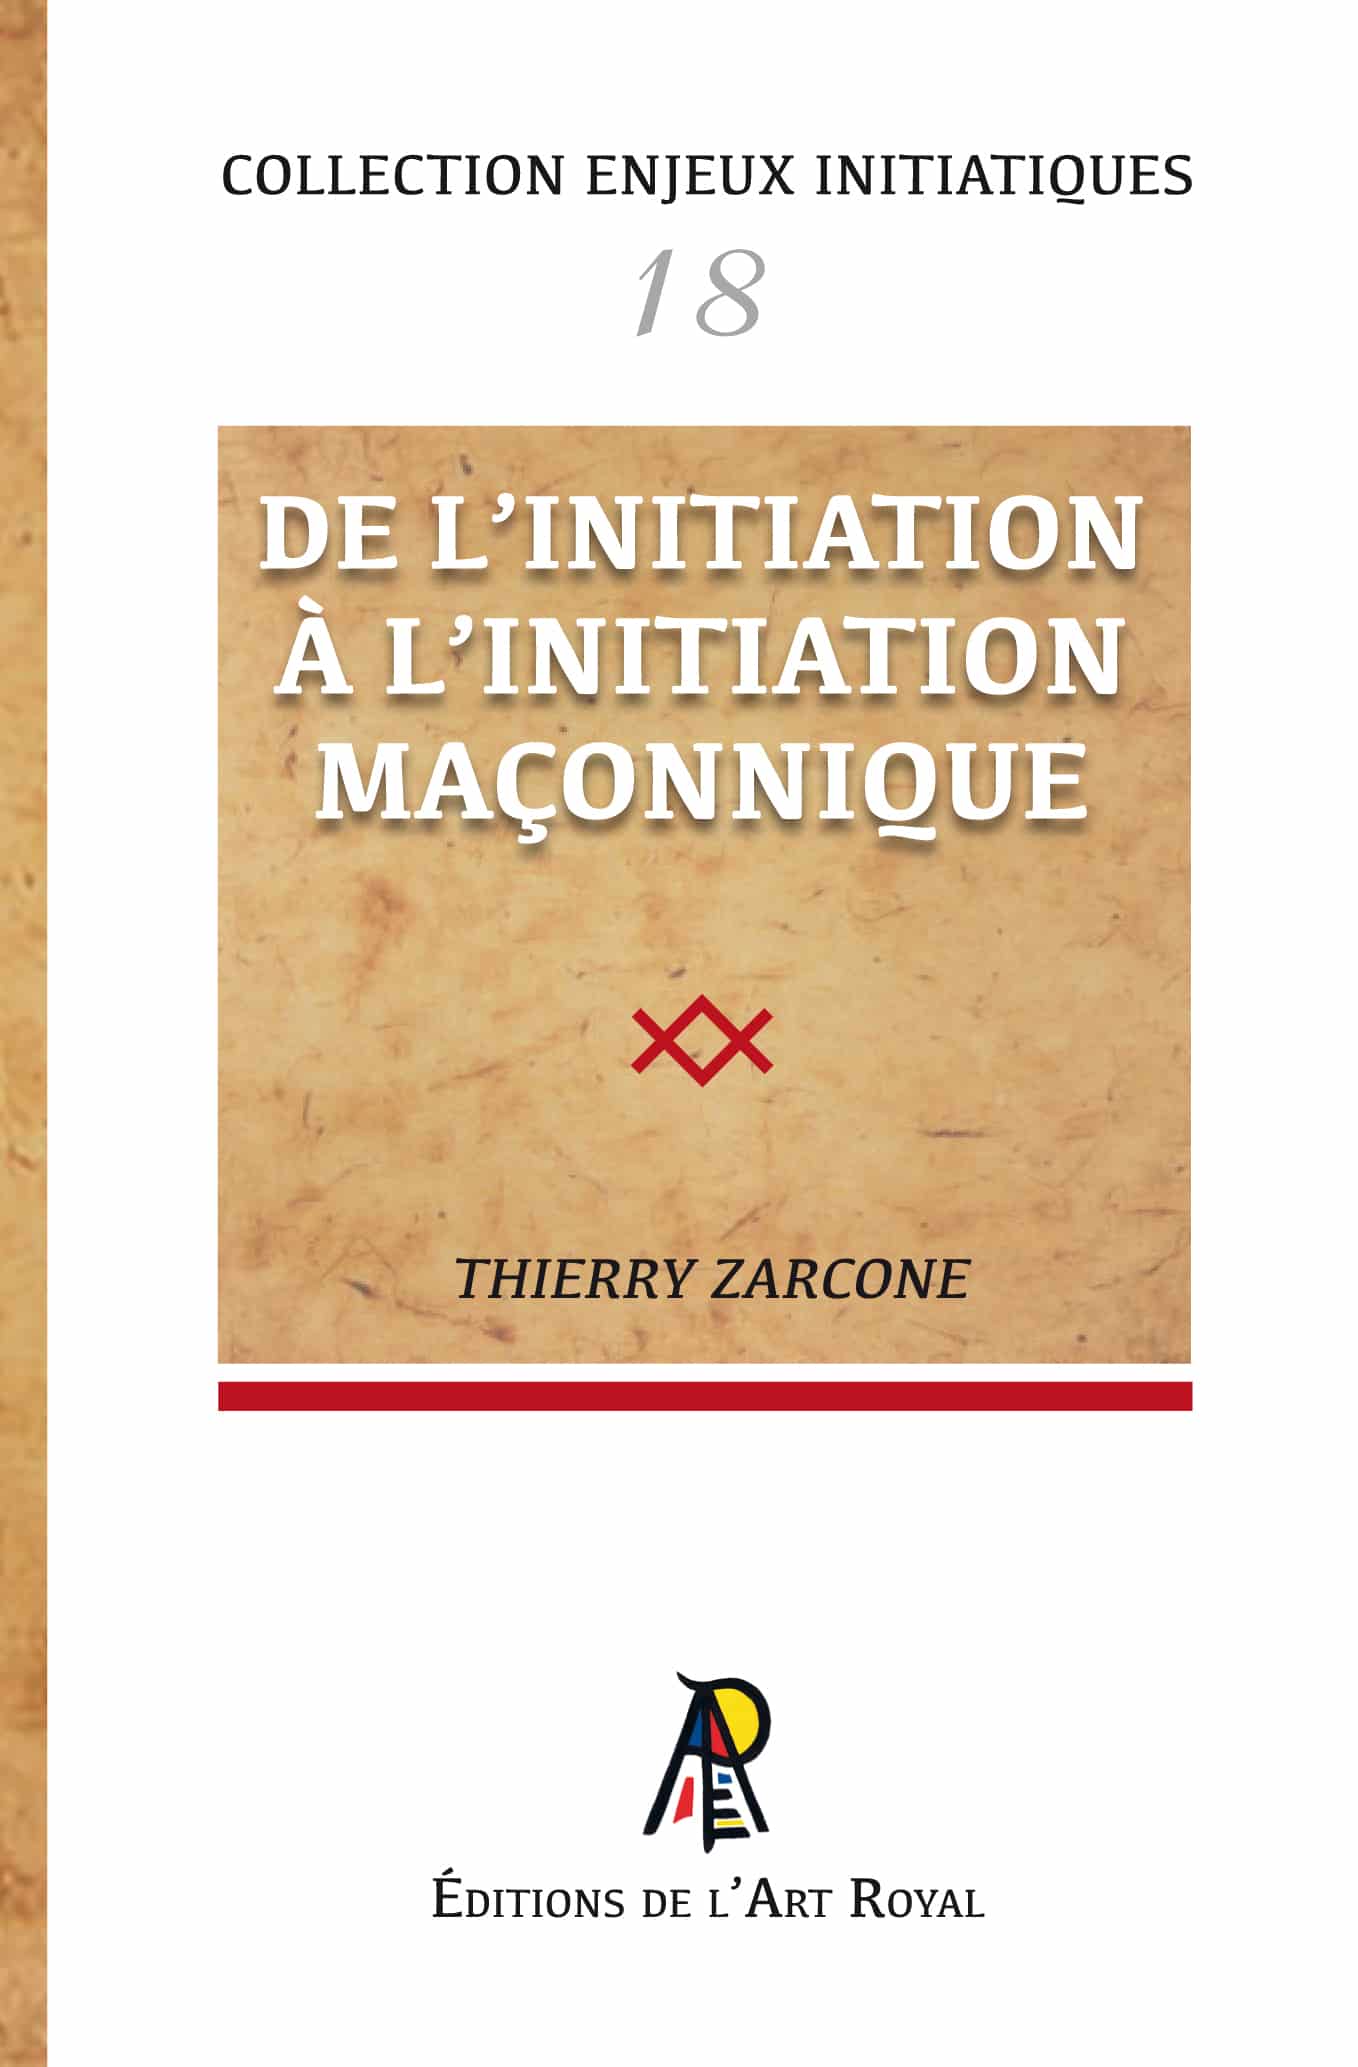 De l'initiation à l'initiation maçonnique, Thierry Zarcone